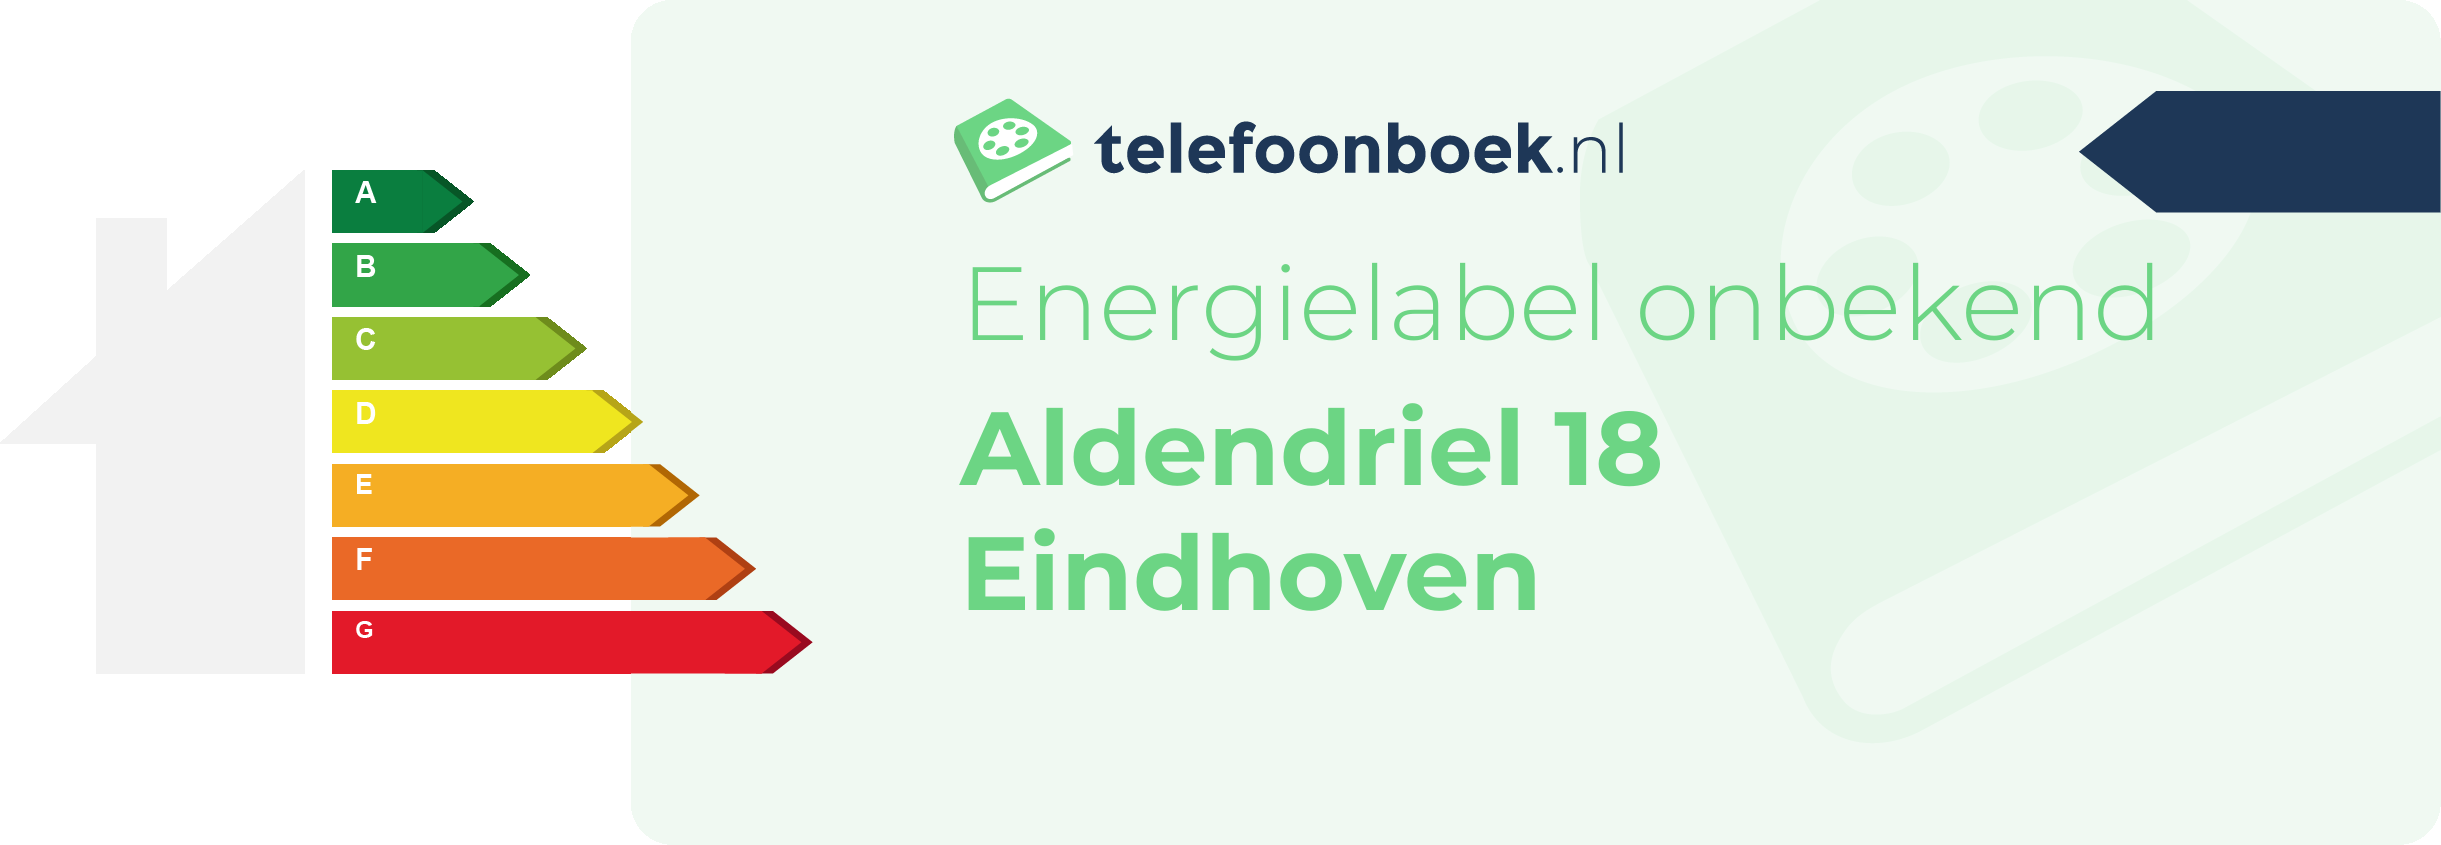 Energielabel Aldendriel 18 Eindhoven